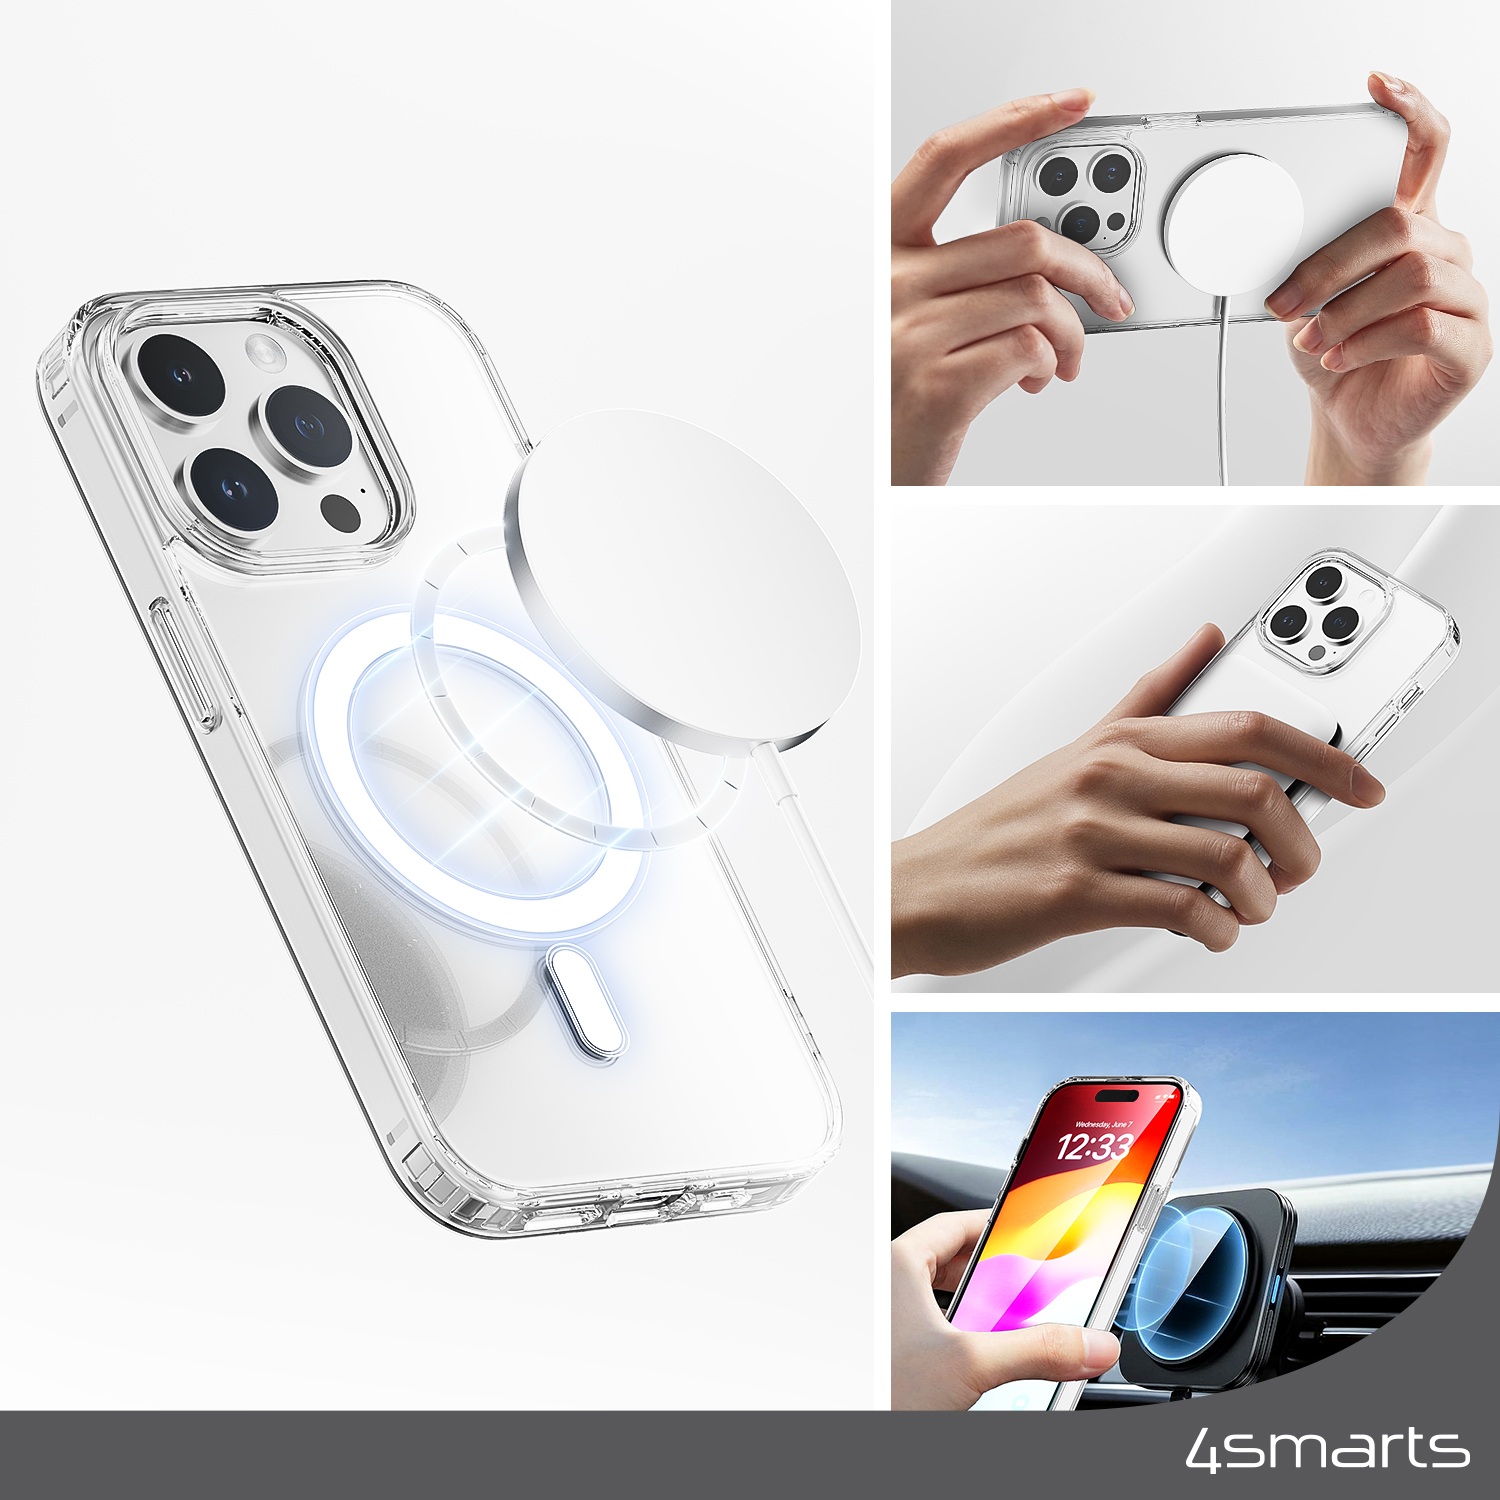 Das 4smarts 3in1 Premium Starter Set für das Apple iPhone 15 beinhaltet eine MagSafe-kompatible Handyhülle mit ideal ausgerichteten, integrierten Magneten, die sich perfekt an das Smartphone anpassen und so eine mühelose Befestigung und schnelleres kabelloses Laden ermöglichen.